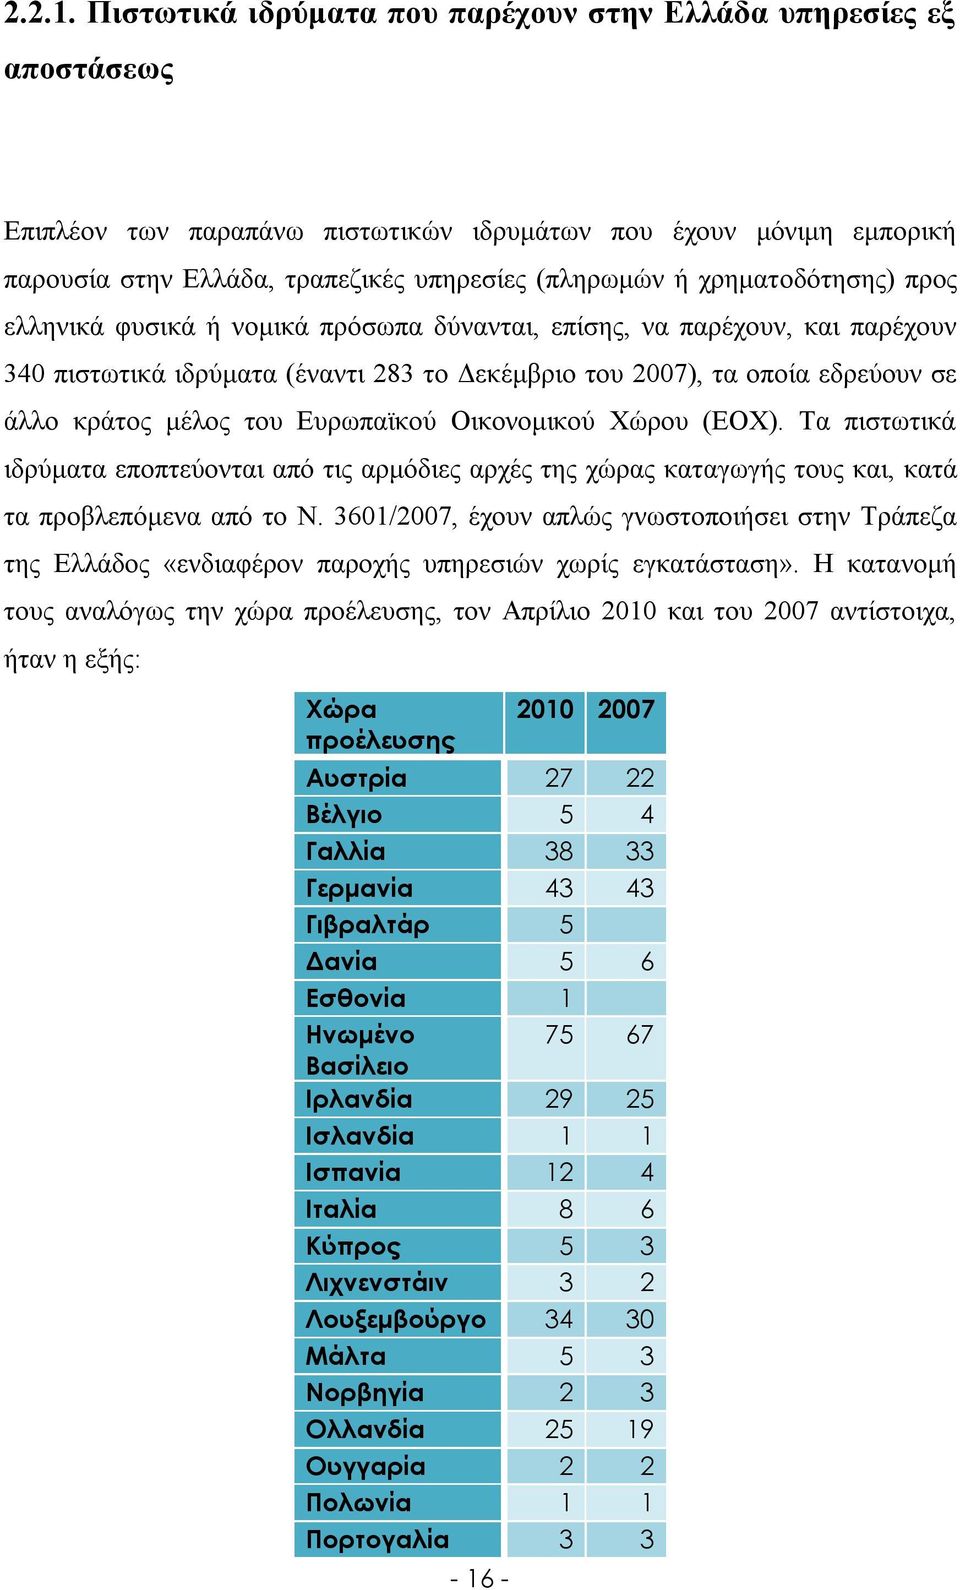 χρηματοδότησης) προς ελληνικά φυσικά ή νομικά πρόσωπα δύνανται, επίσης, να παρέχουν, και παρέχουν 340 πιστωτικά ιδρύματα (έναντι 283 το Δεκέμβριο του 2007), τα οποία εδρεύουν σε άλλο κράτος μέλος του